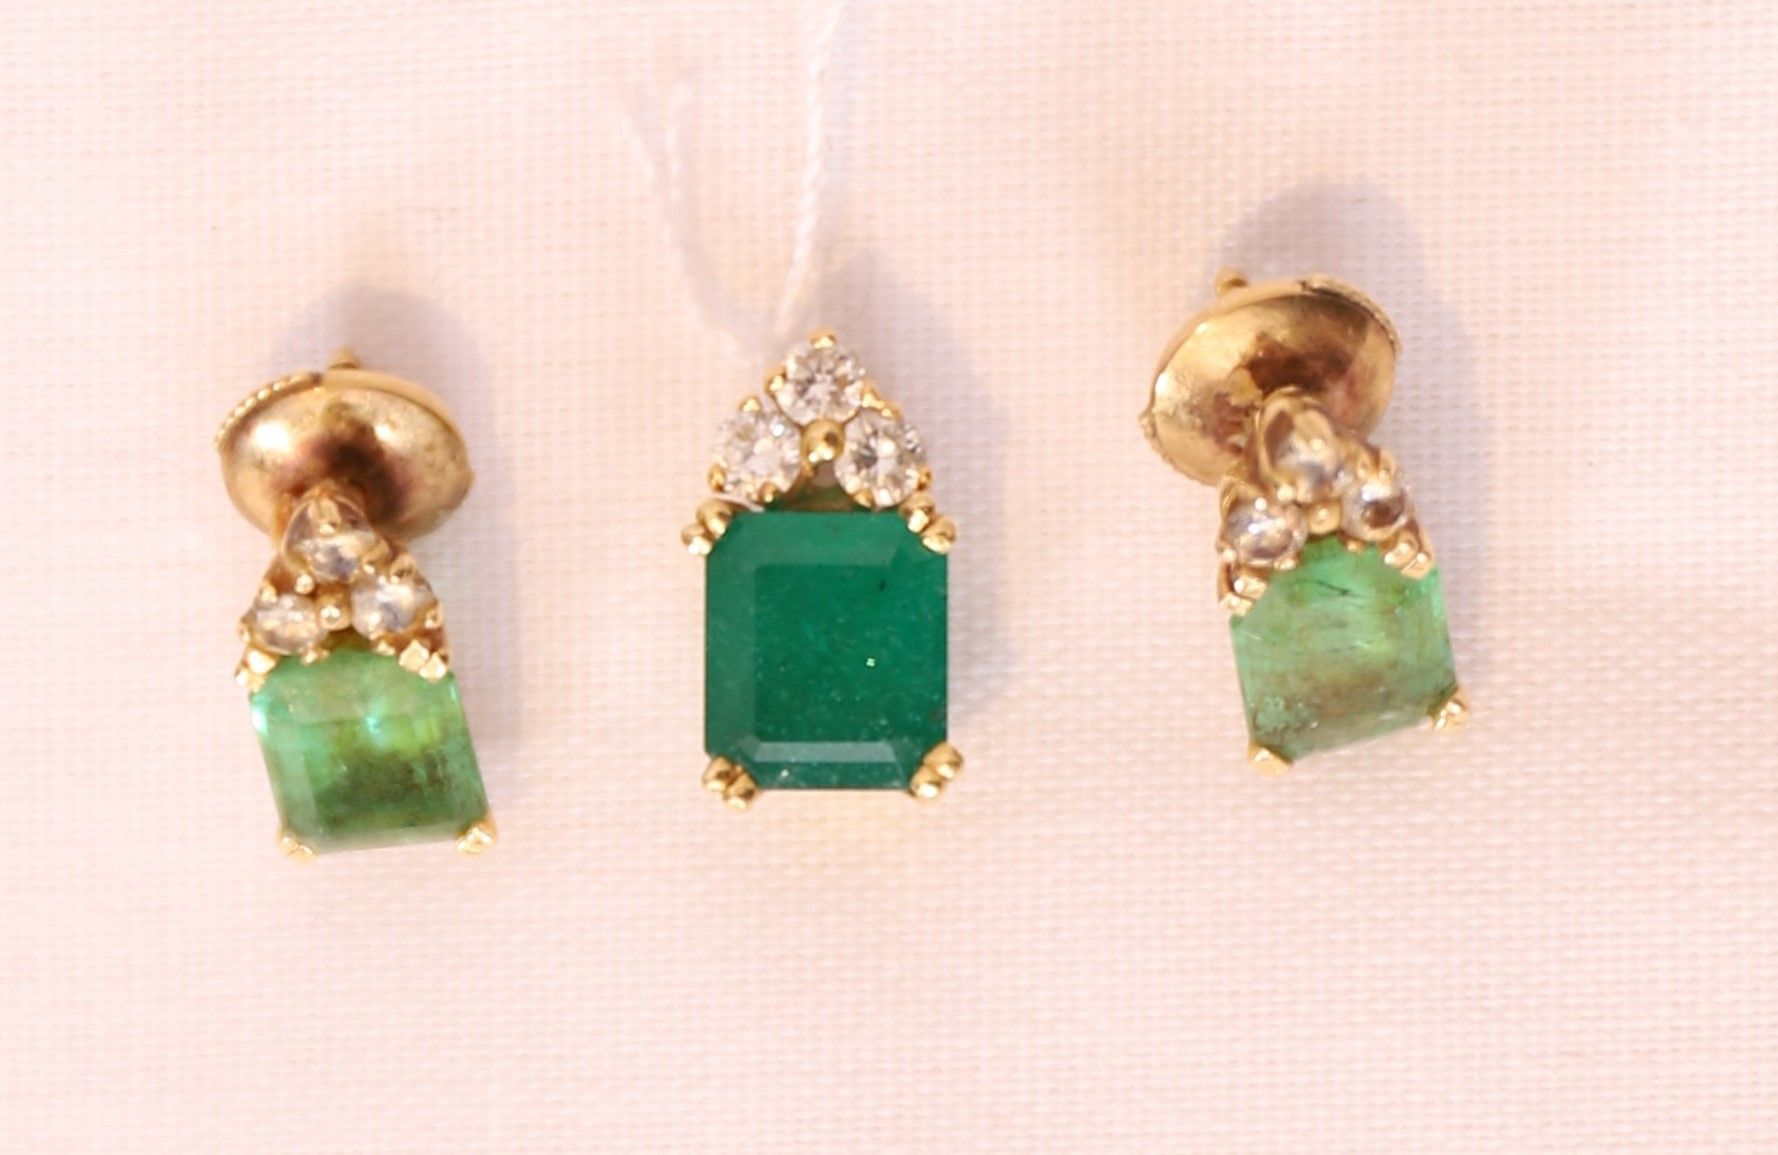 Null 套装，包括一个吊坠和一对祖母绿的耳环

镶有绿宝石和钻石的黄金底座

重量：5克左右。